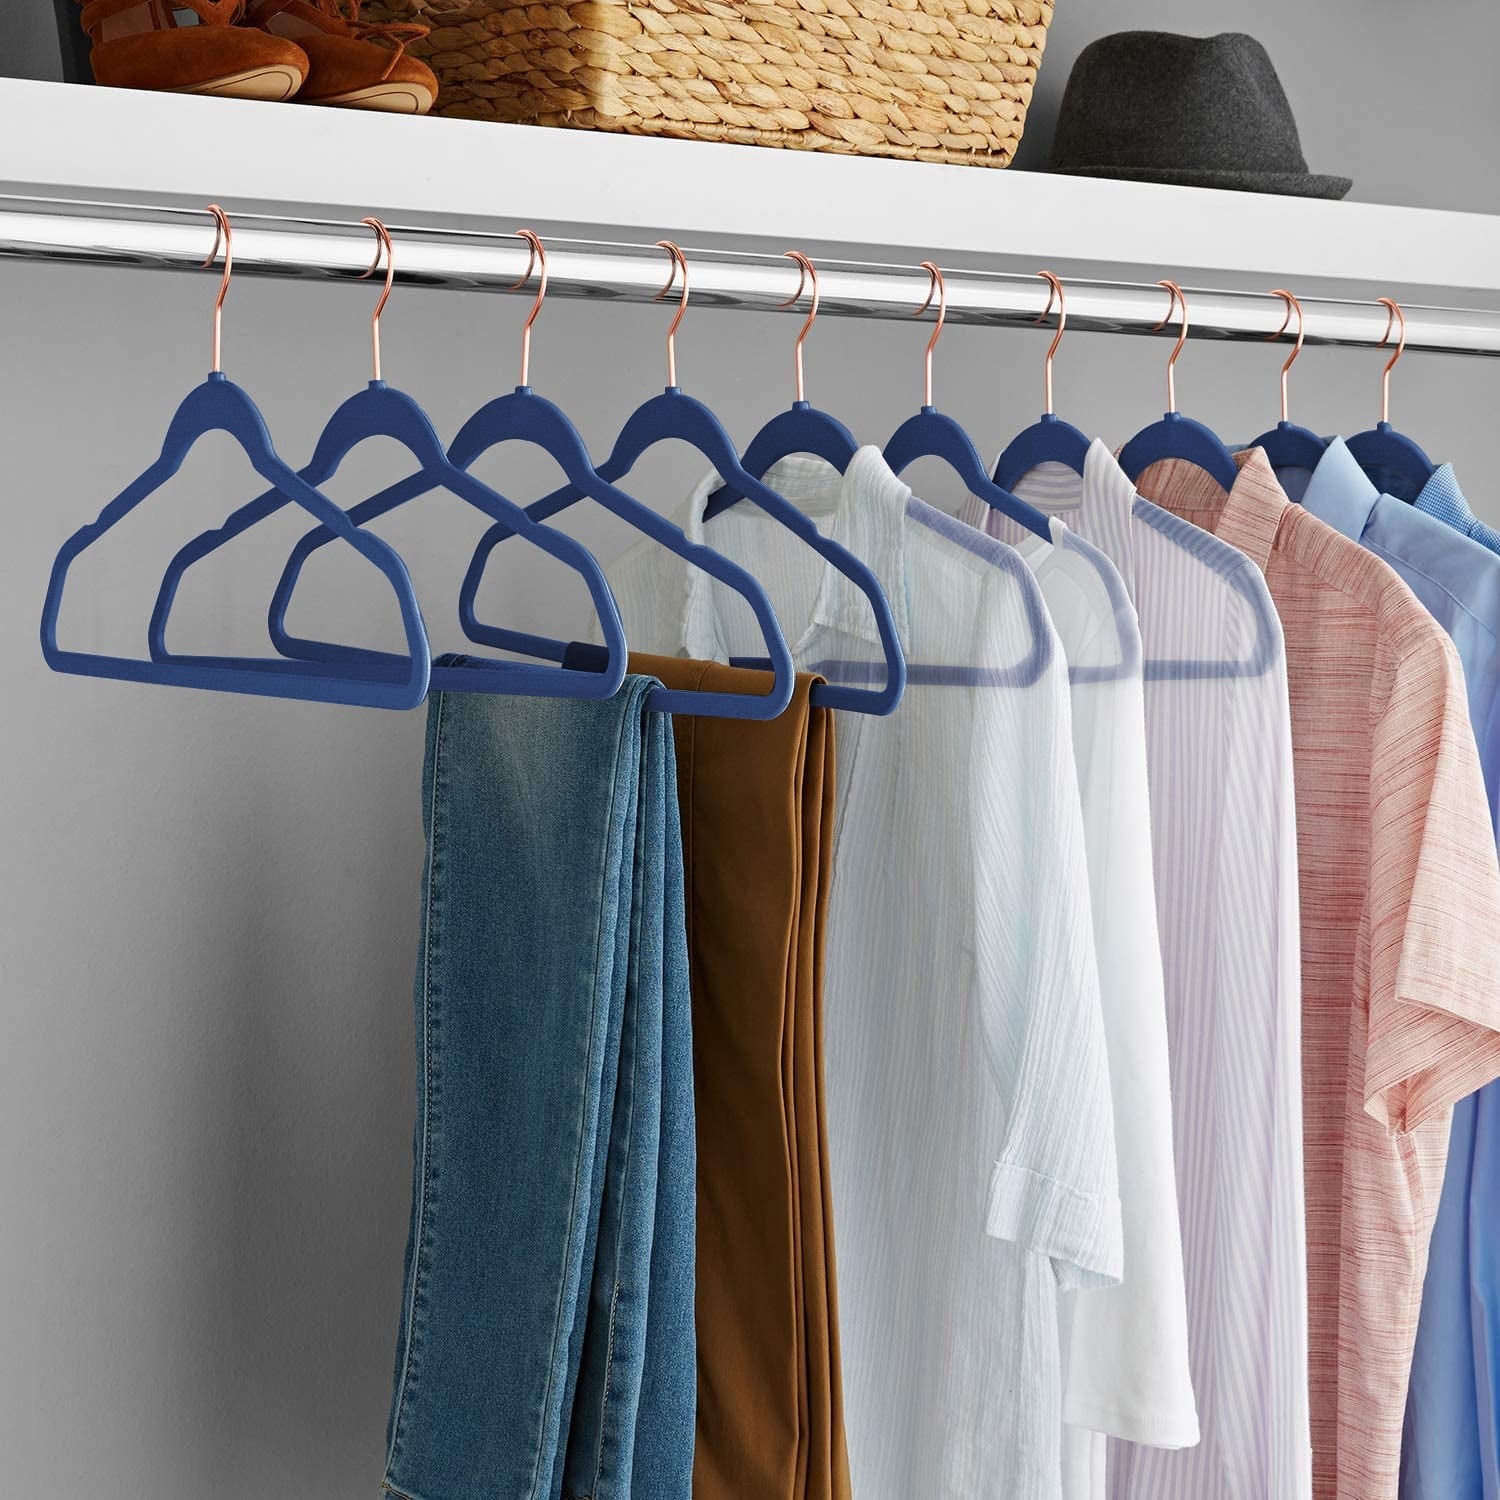 Velvet Clothes Hangers (20, 40, 60, 100 Packs) Heavy Duty Durable Coat and Clothes  Hangers, Vibrant Color Hangers